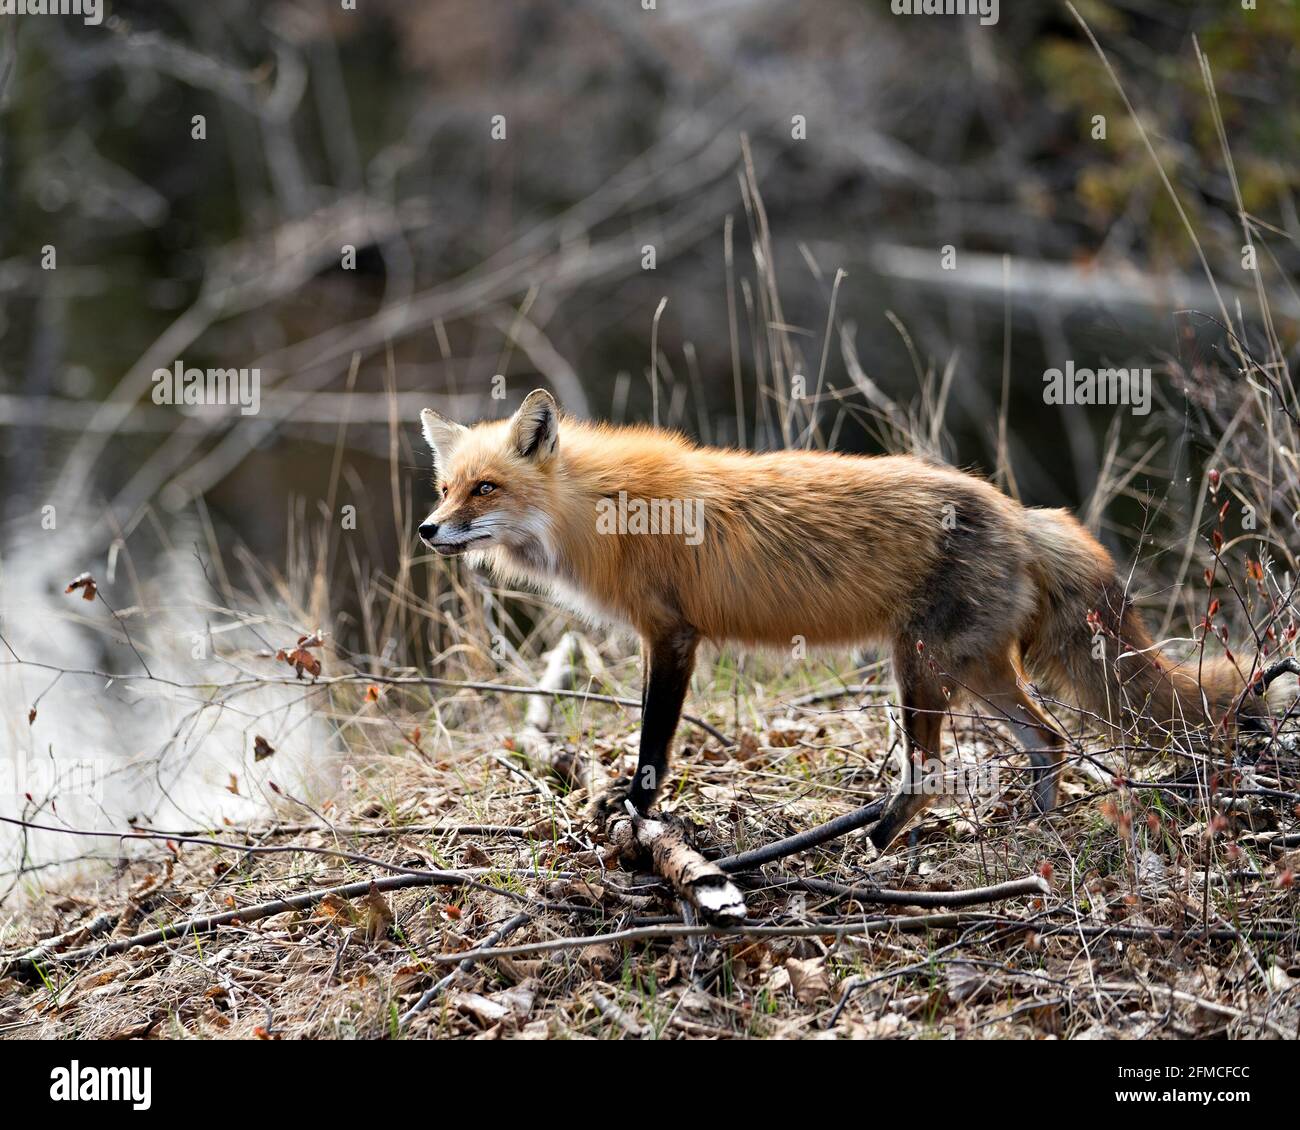 Vista ravvicinata del profilo della volpe rossa in piedi vicino all'acqua nel suo ambiente e habitat nella foresta. Immagine FOX. Immagine. Verticale. Foto. Foto Stock